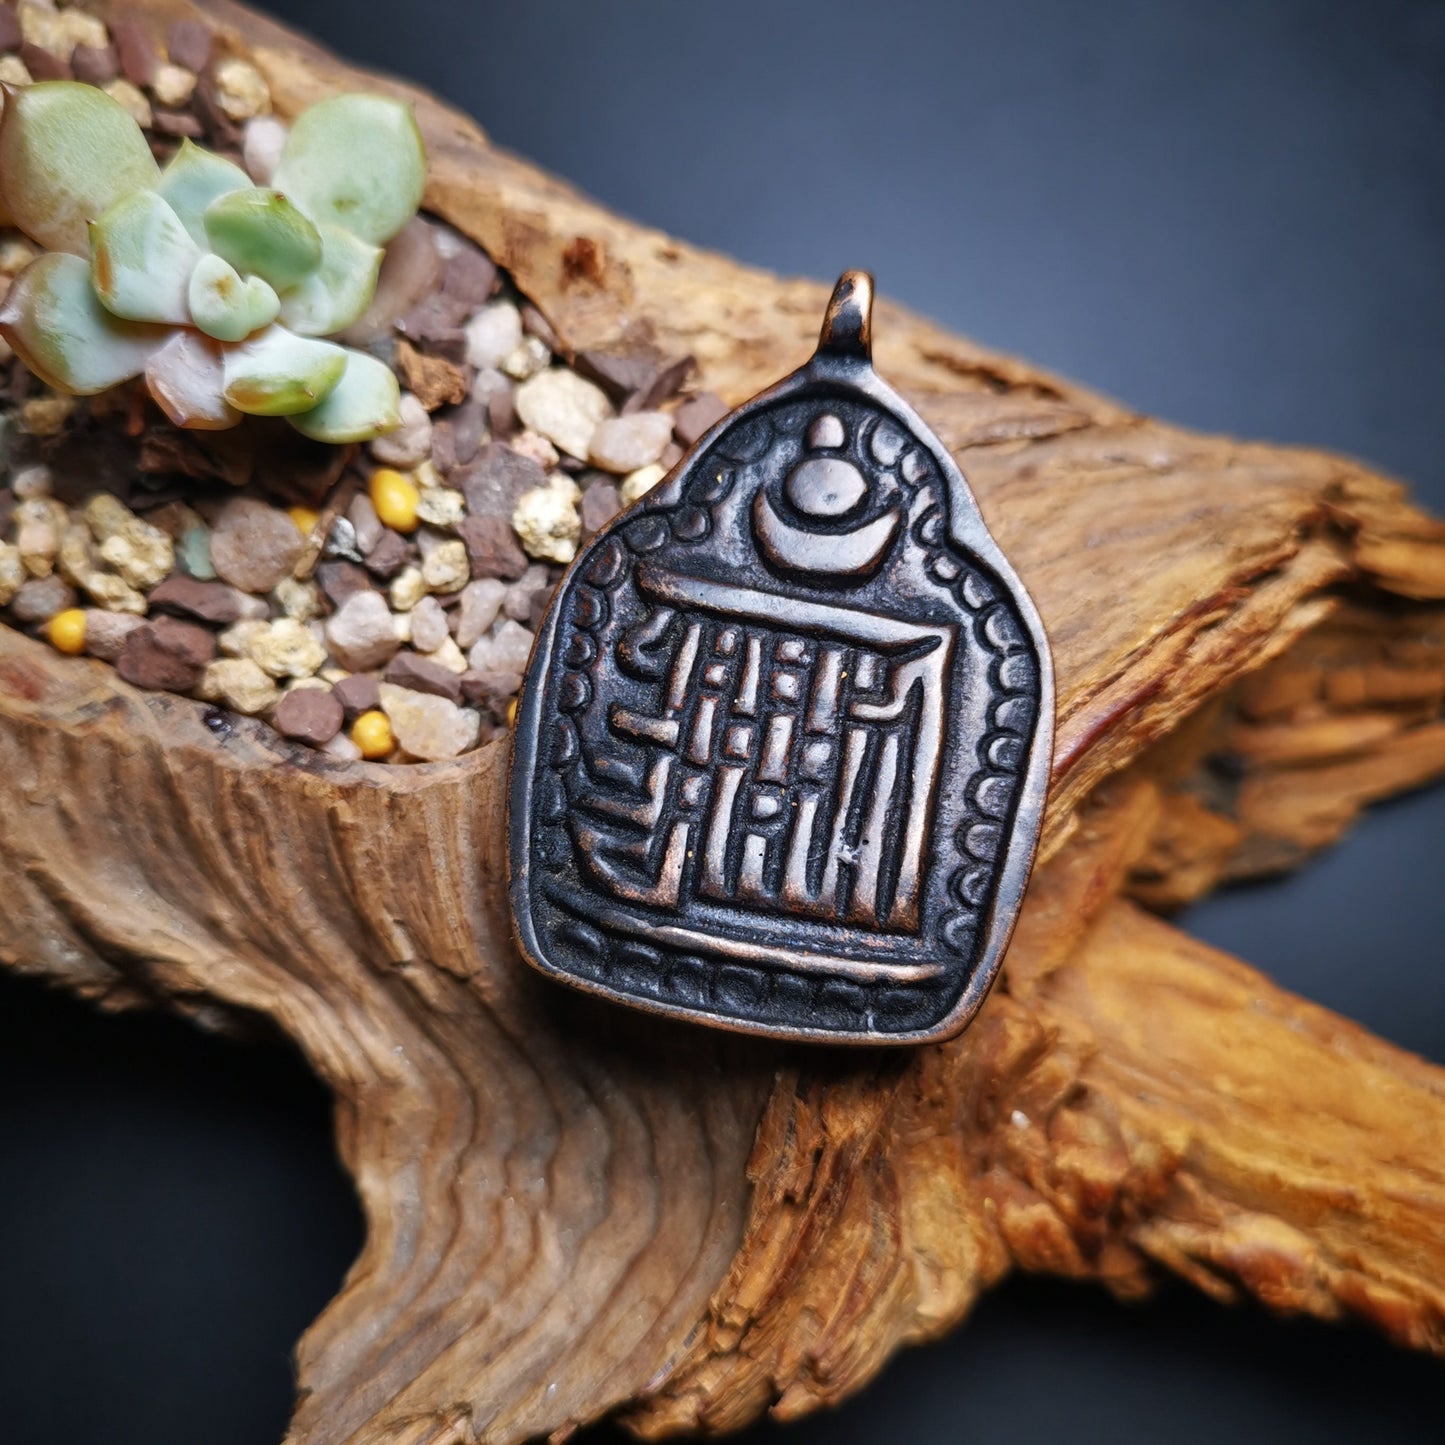 Gandhanra Handmade Kalachakra Amulet Badge,Symbol of Buddhist,60 Years Old